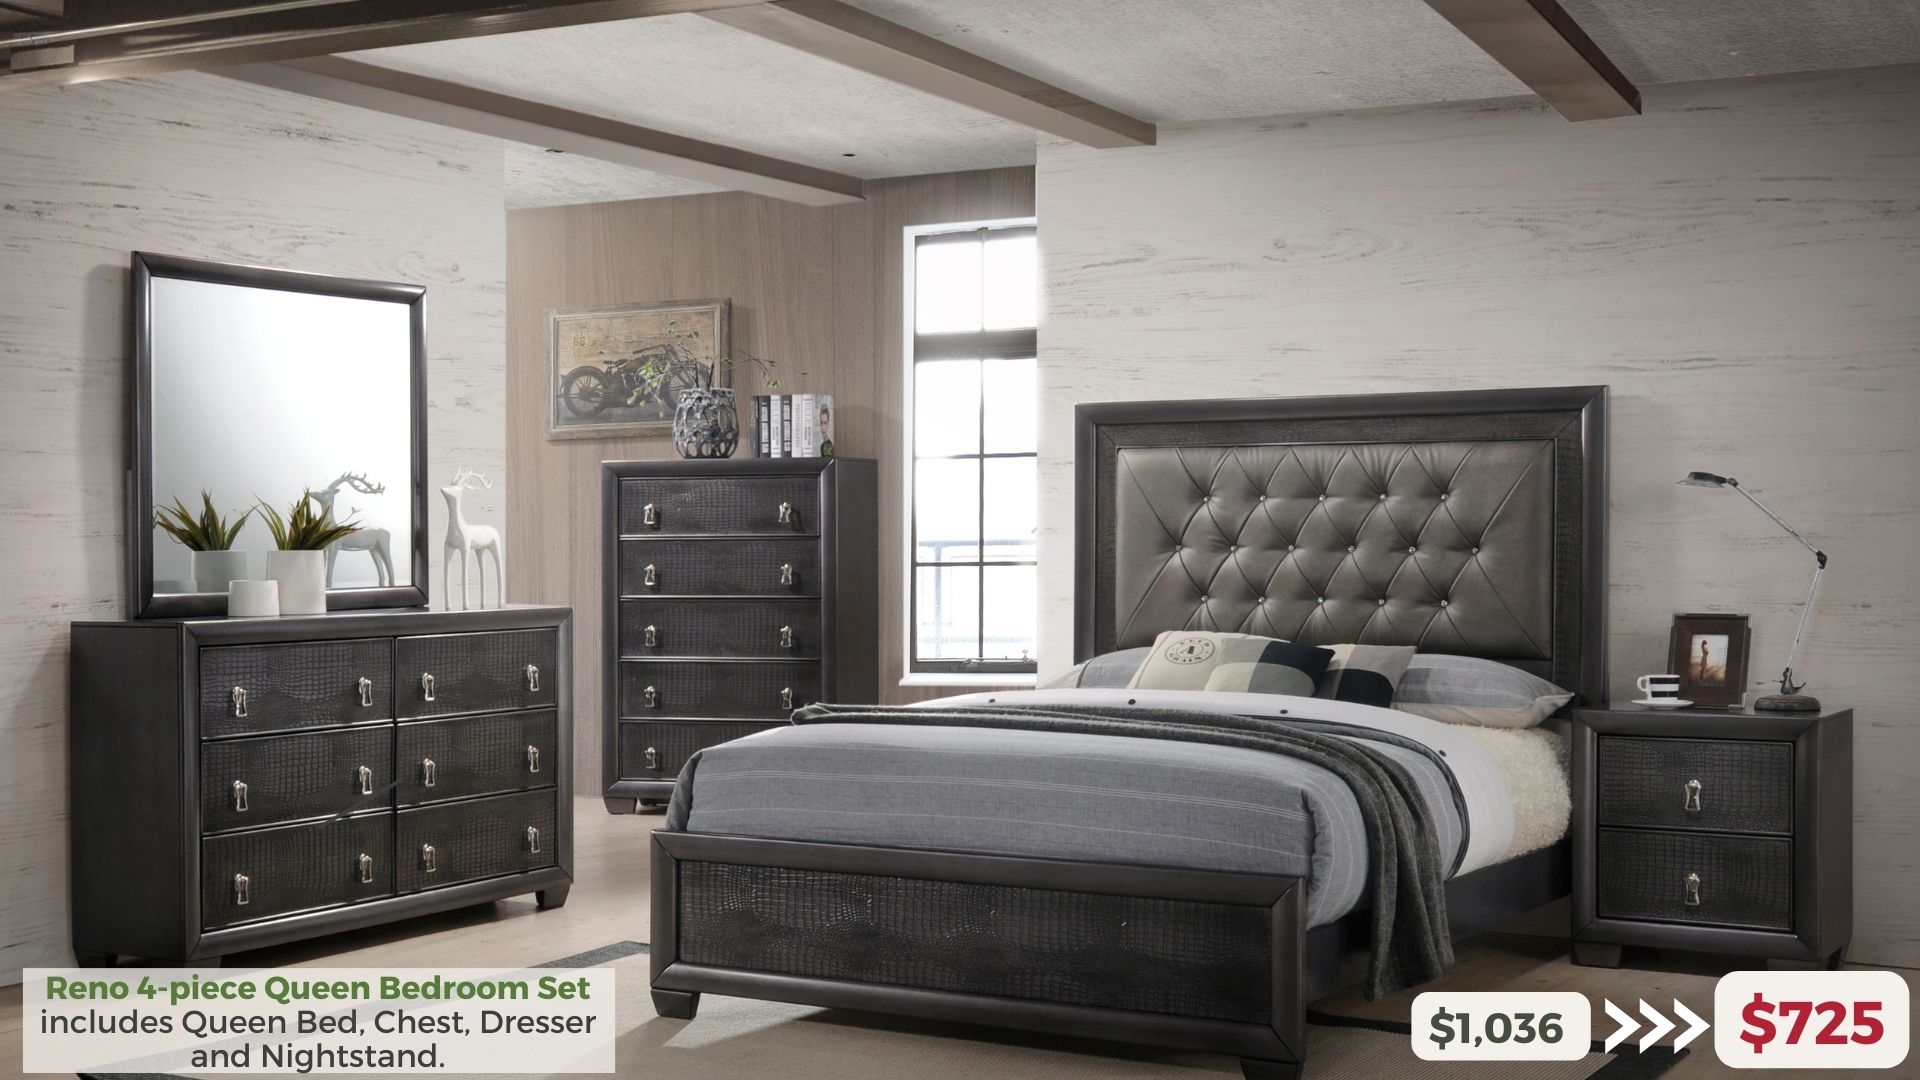 Reno 4-piece Queen Bedroom Set includes Queen Bed, Chedst, Dresser and Nightstand. $725